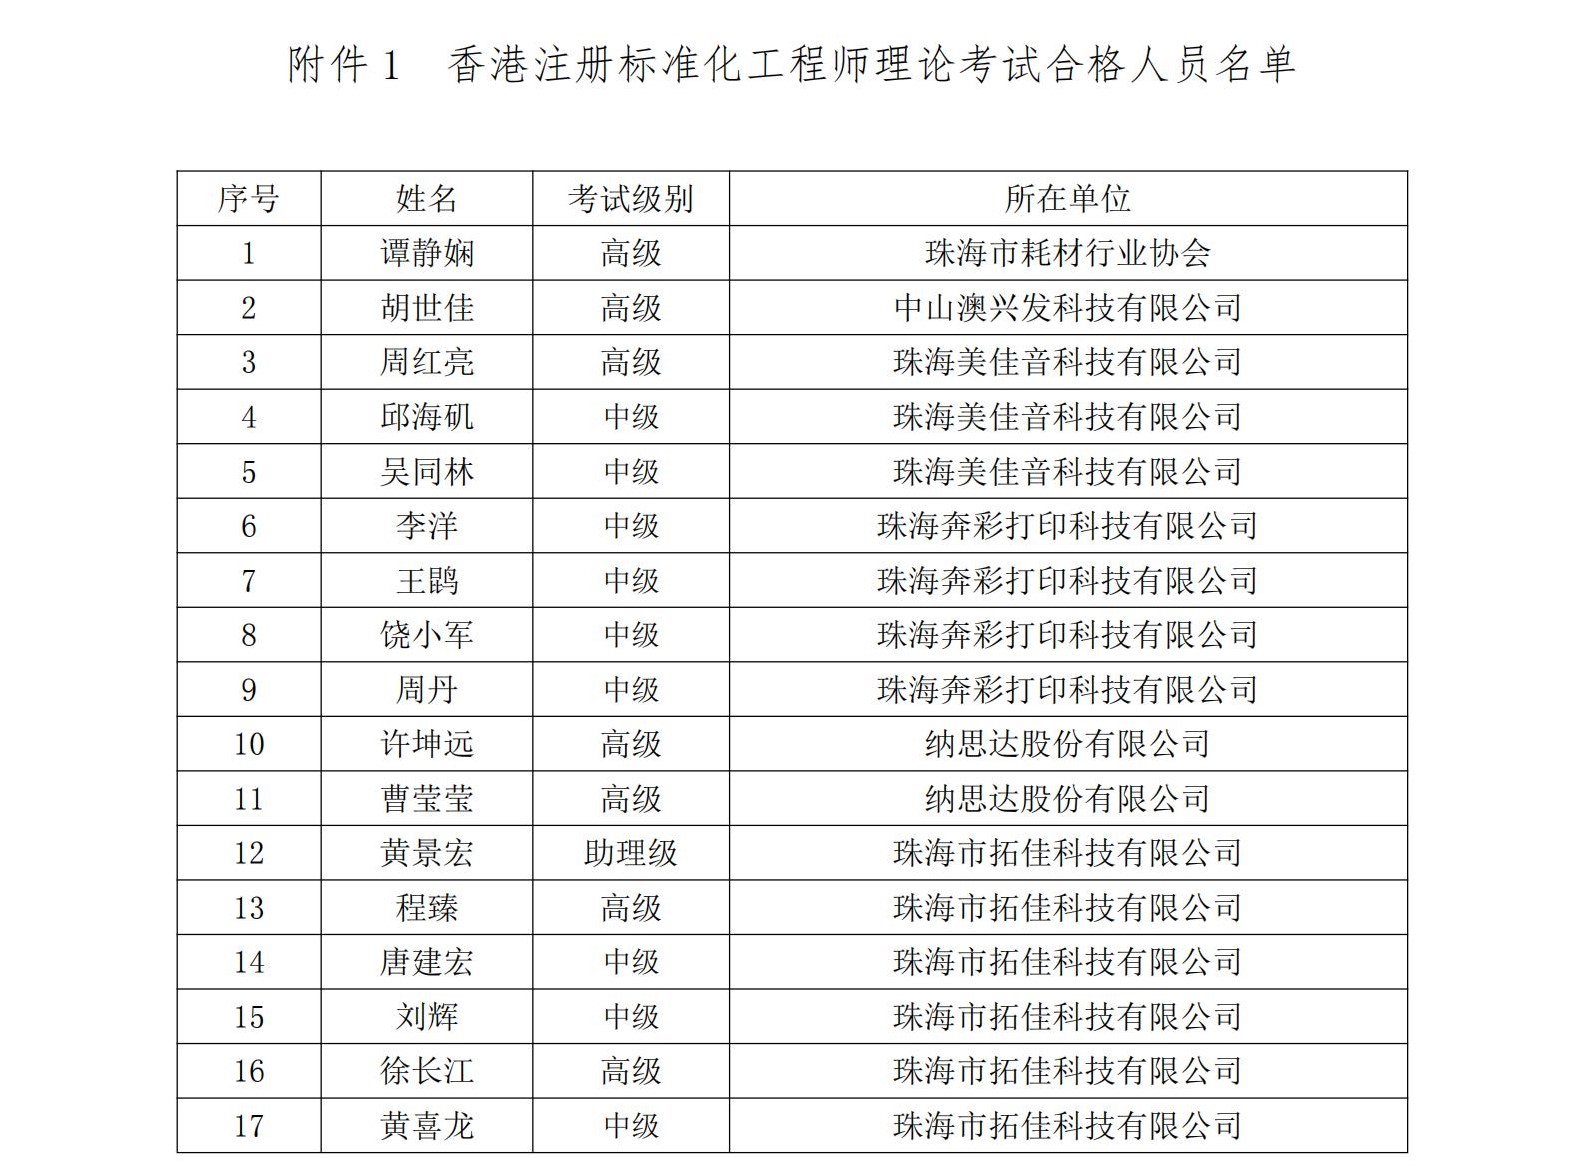 10 2022年第二期香港品质保证局注册标准化工程师理论考试合格人员名单发布公告_11.jpg